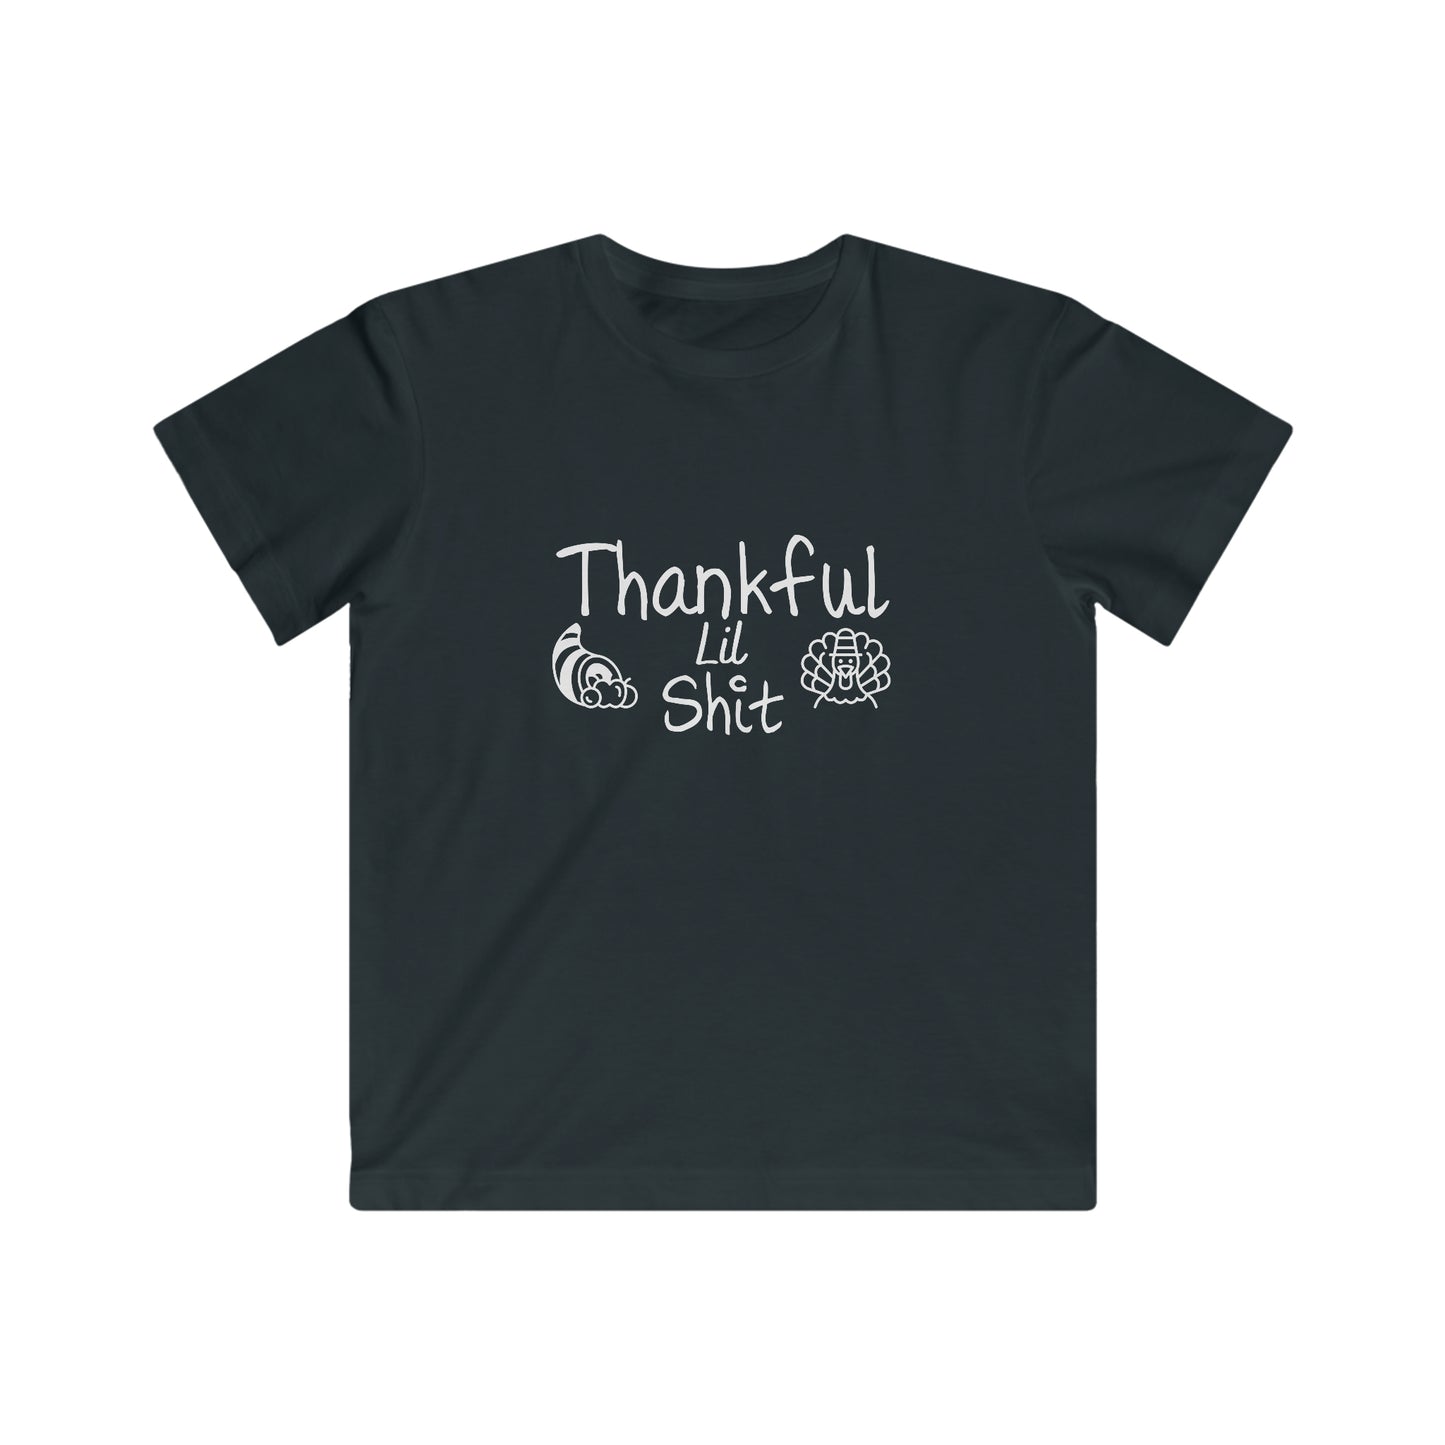 Kids Thankful Tee, Kids Thanksgiving Shirt, Kids Holiday Shirt